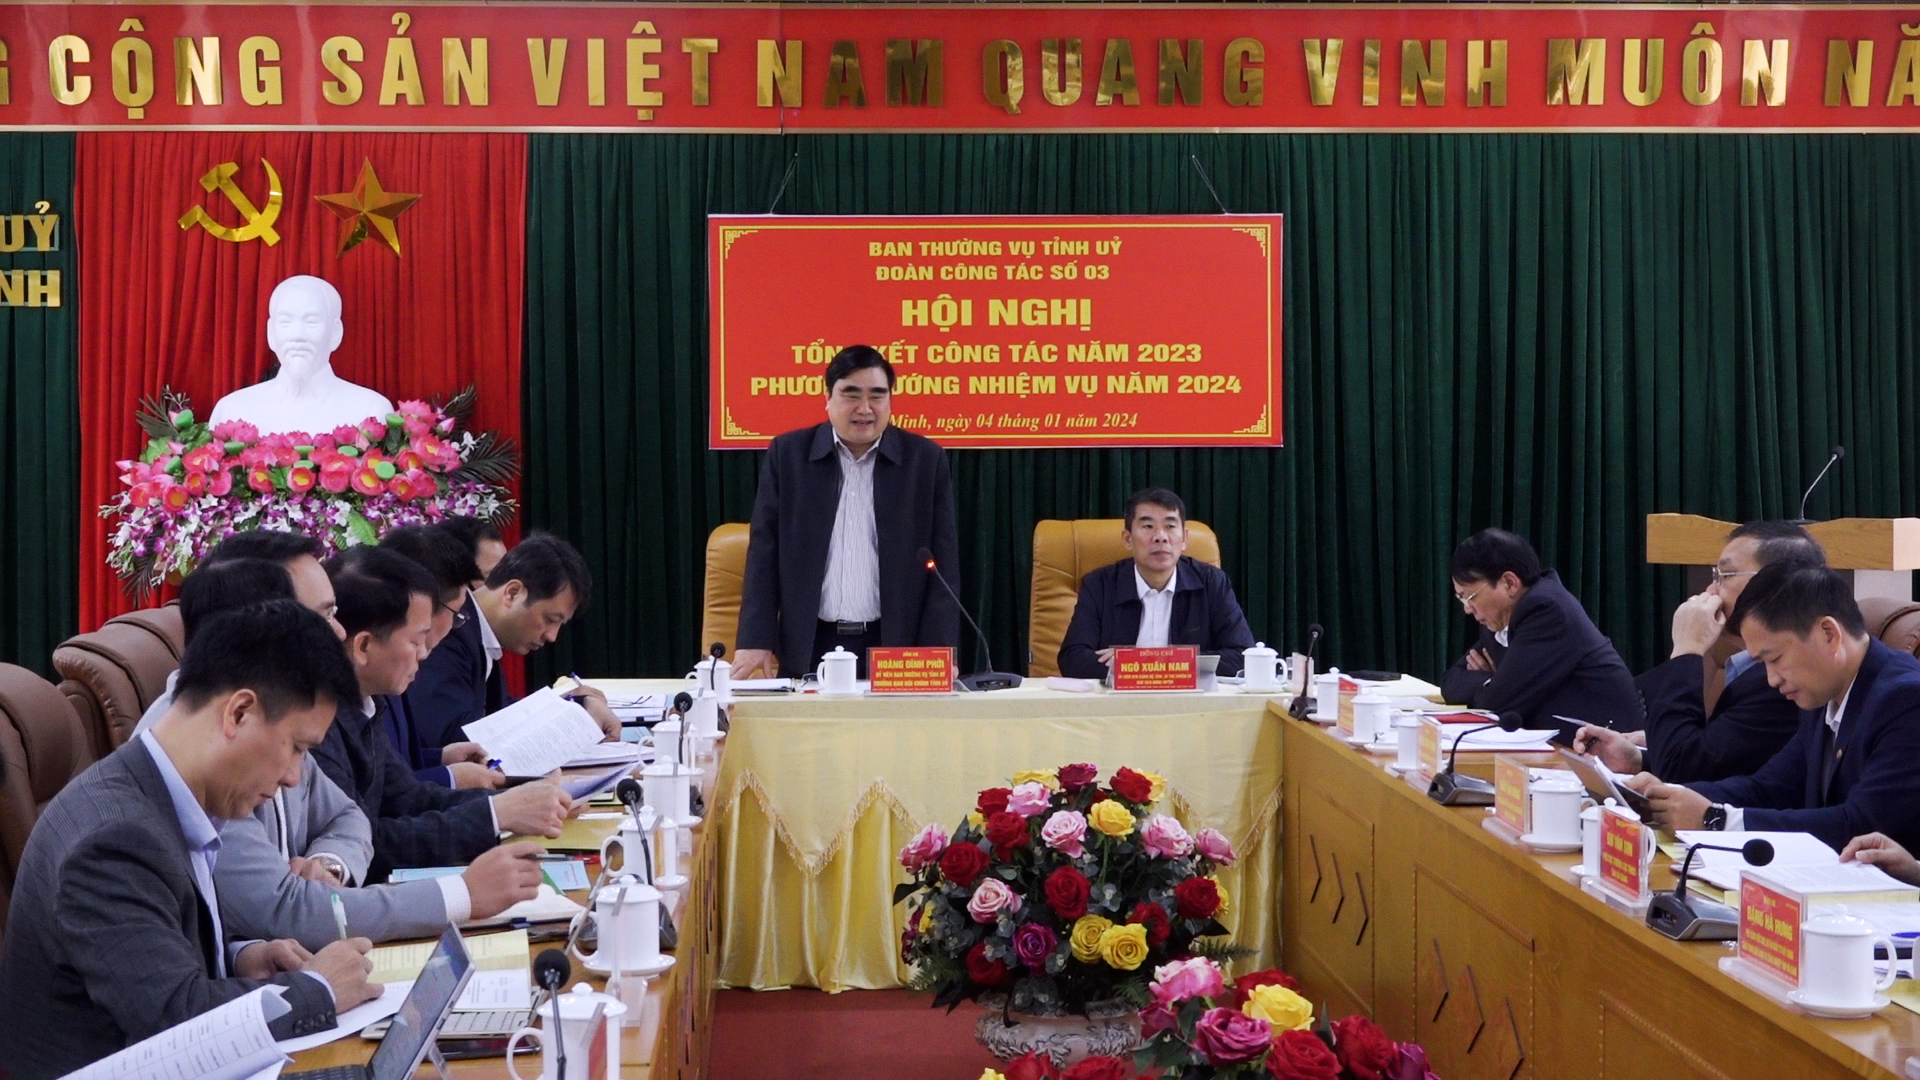 Đoàn công tác số 03 theo QĐ 998 của Tỉnh ủy Hà Giang tổng kết công tác năm 2023